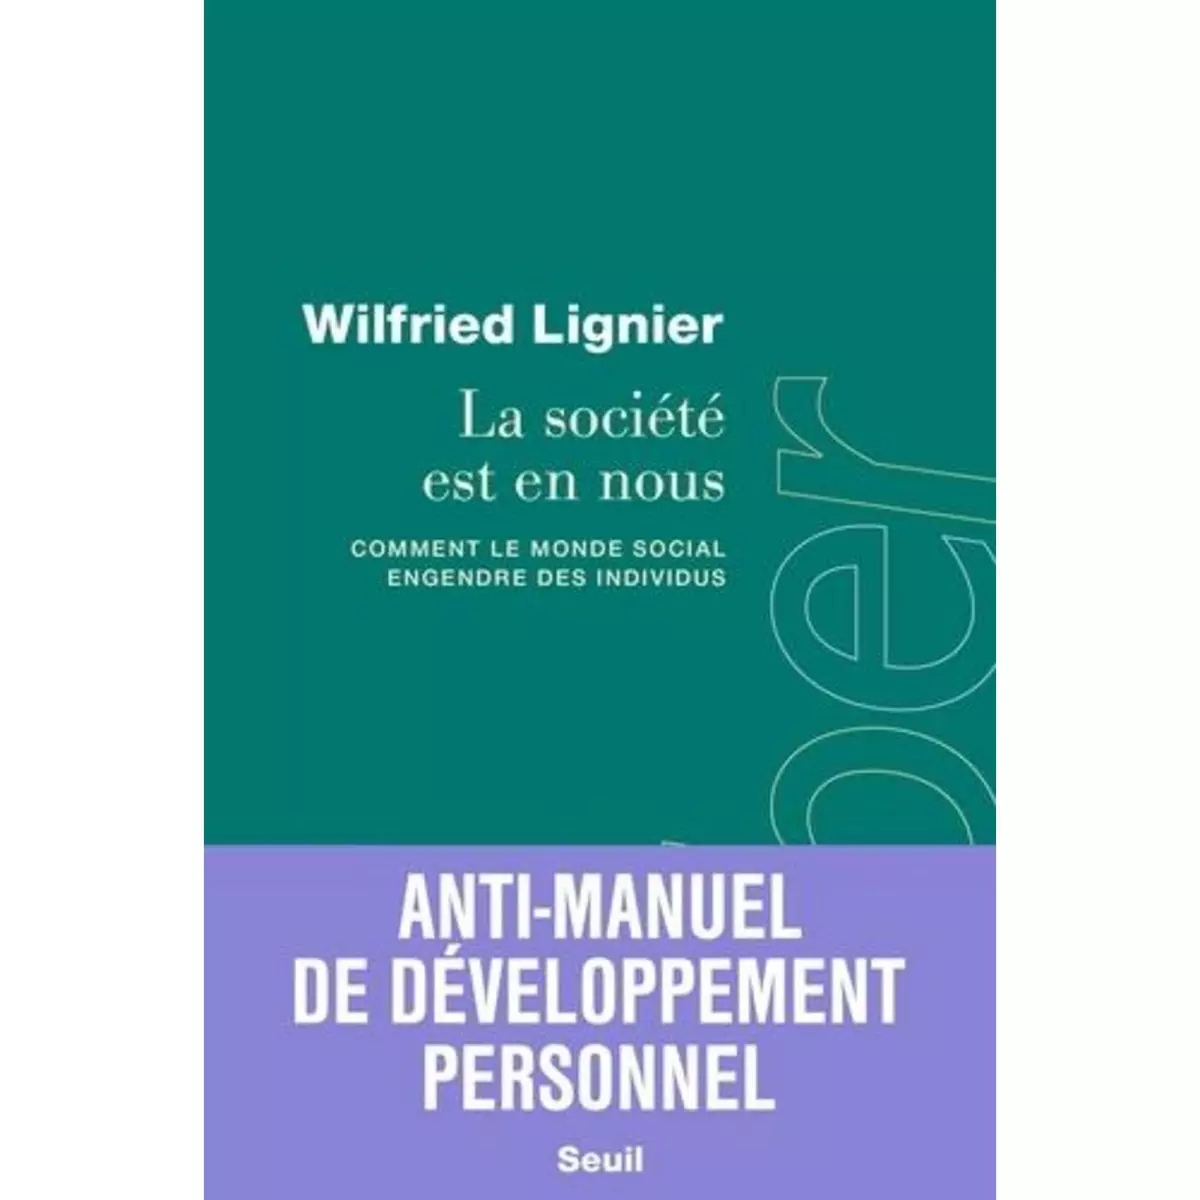  LA SOCIETE EST EN NOUS. COMMENT LE MONDE SOCIAL ENGENDRE DES INDIVIDUS, Lignier Wilfried